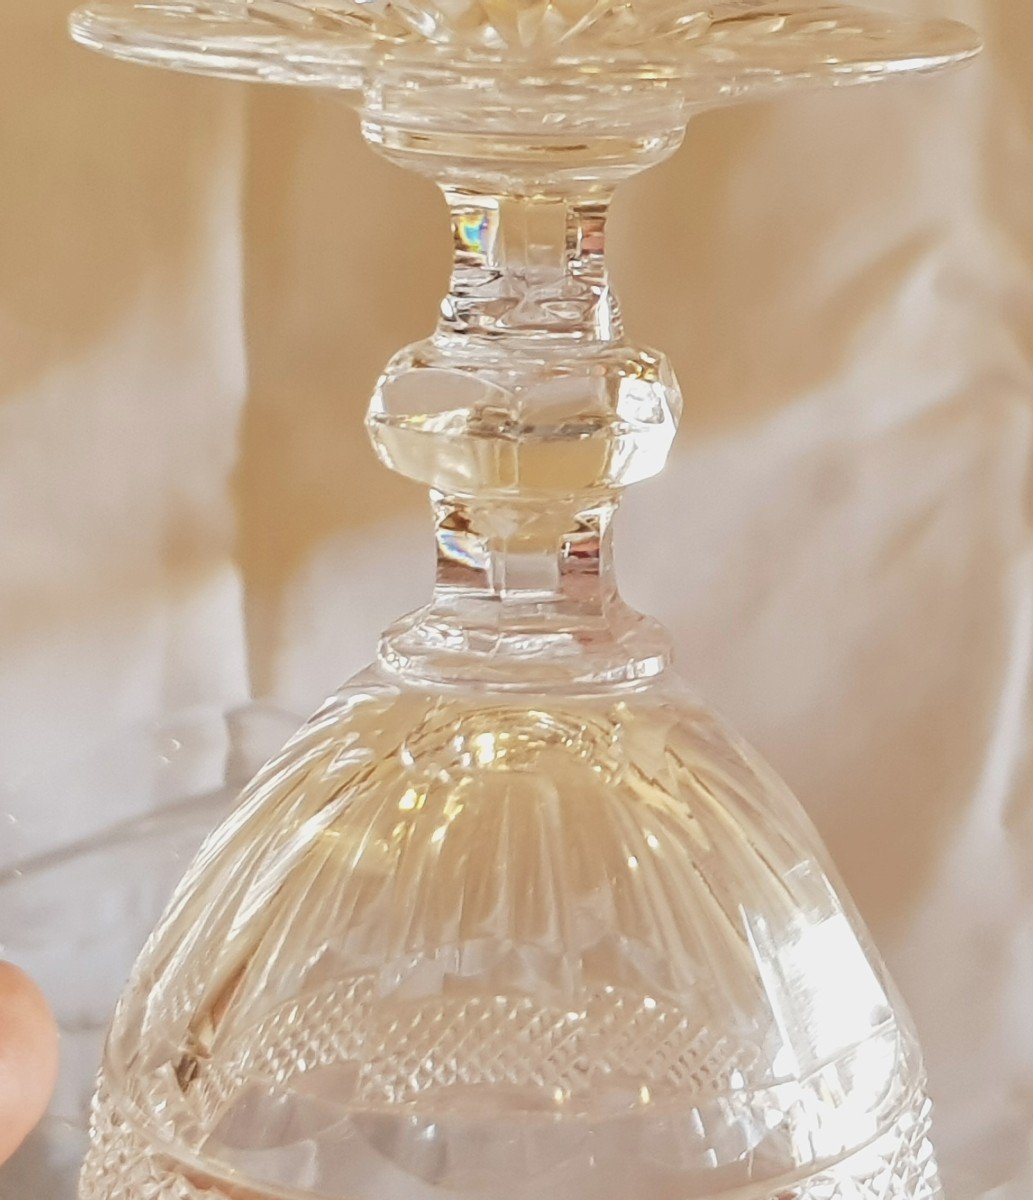 Serie 6 bicchieri da vino antichi in cristallo Saint Louis modello Trianon-photo-1